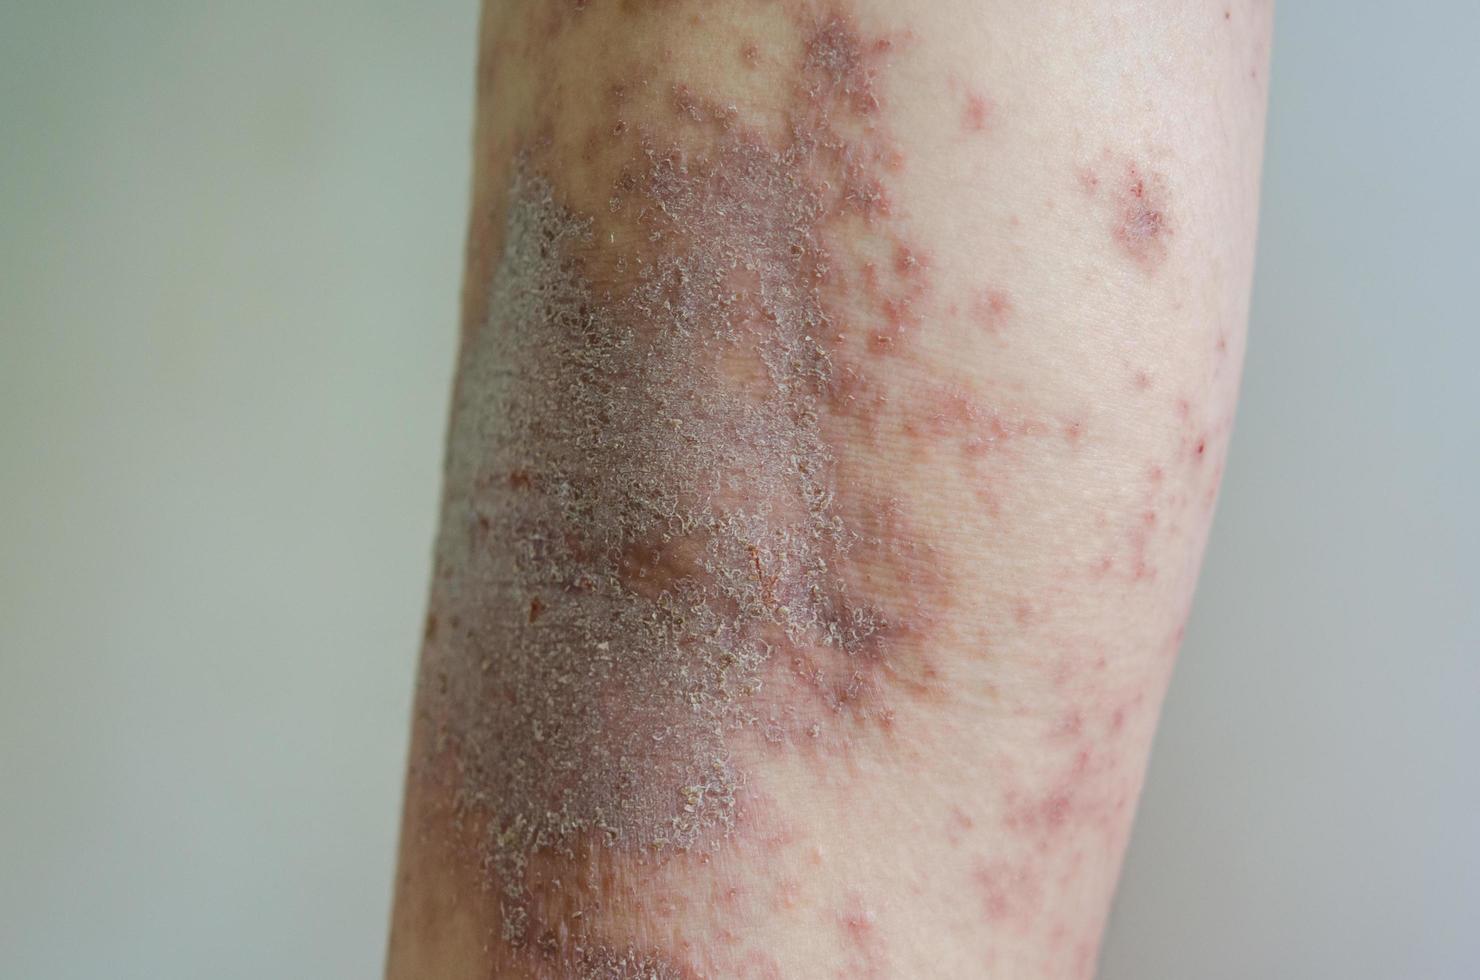 röda utslag flicka hudsjukdom orsakad av allergier mot droger, mat, kemikalier, dåligt immunförsvar i lymfan. foto